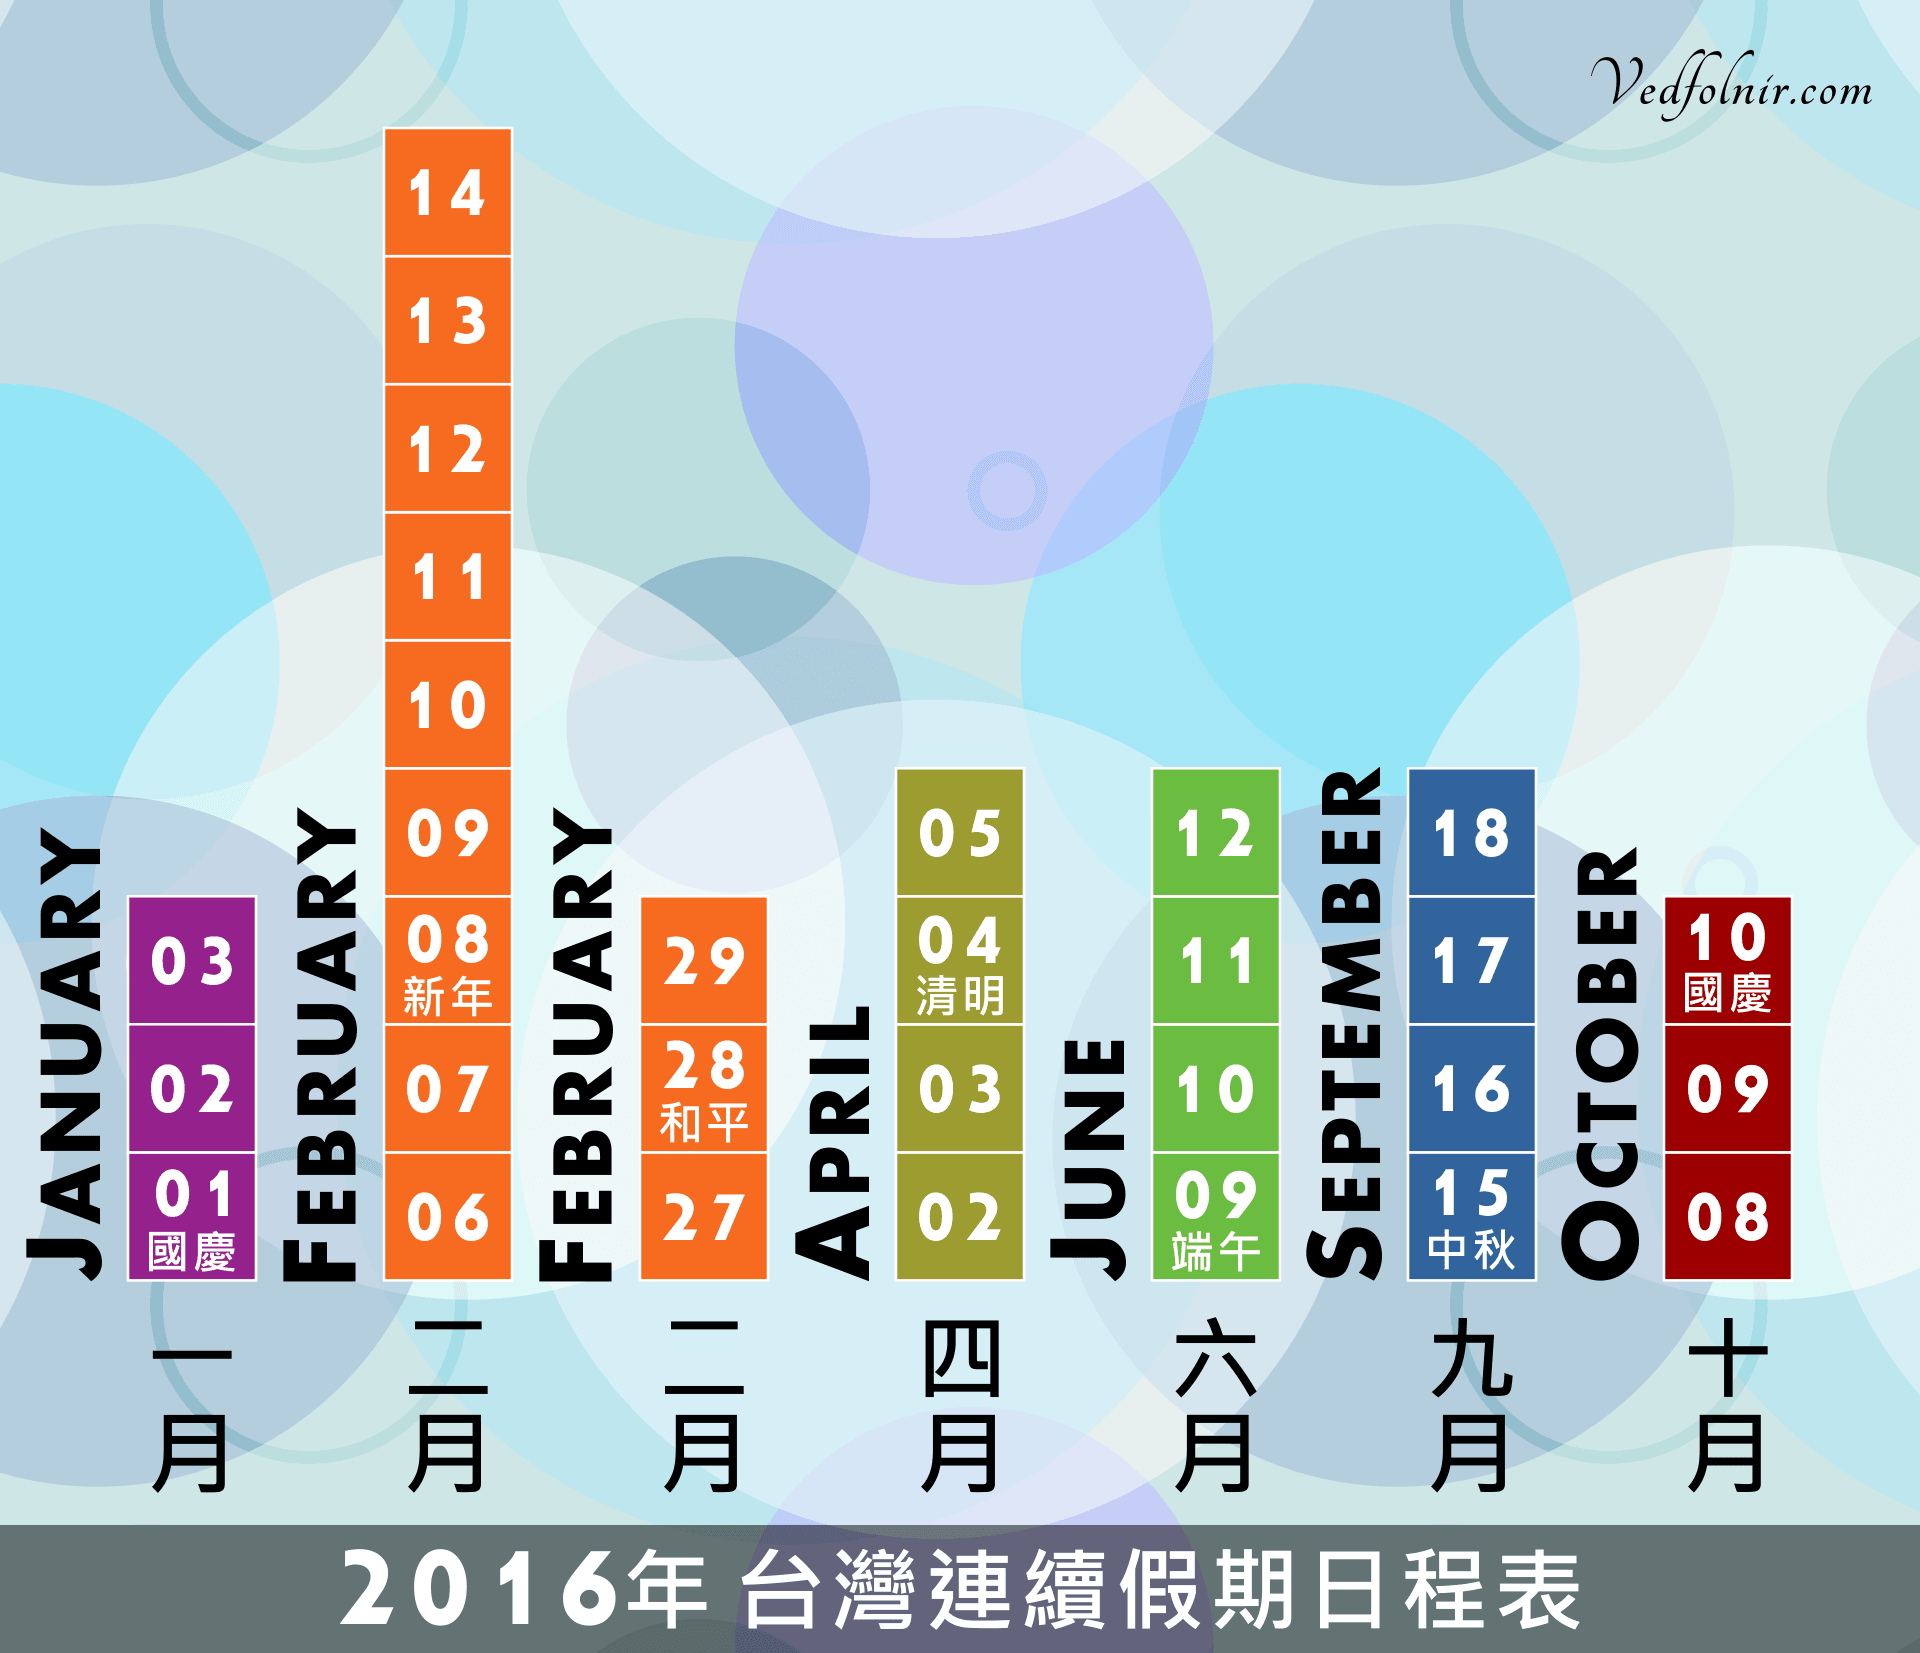 2016 台灣連續假期行事曆（農曆年春節、清明、端午、中秋與國慶）